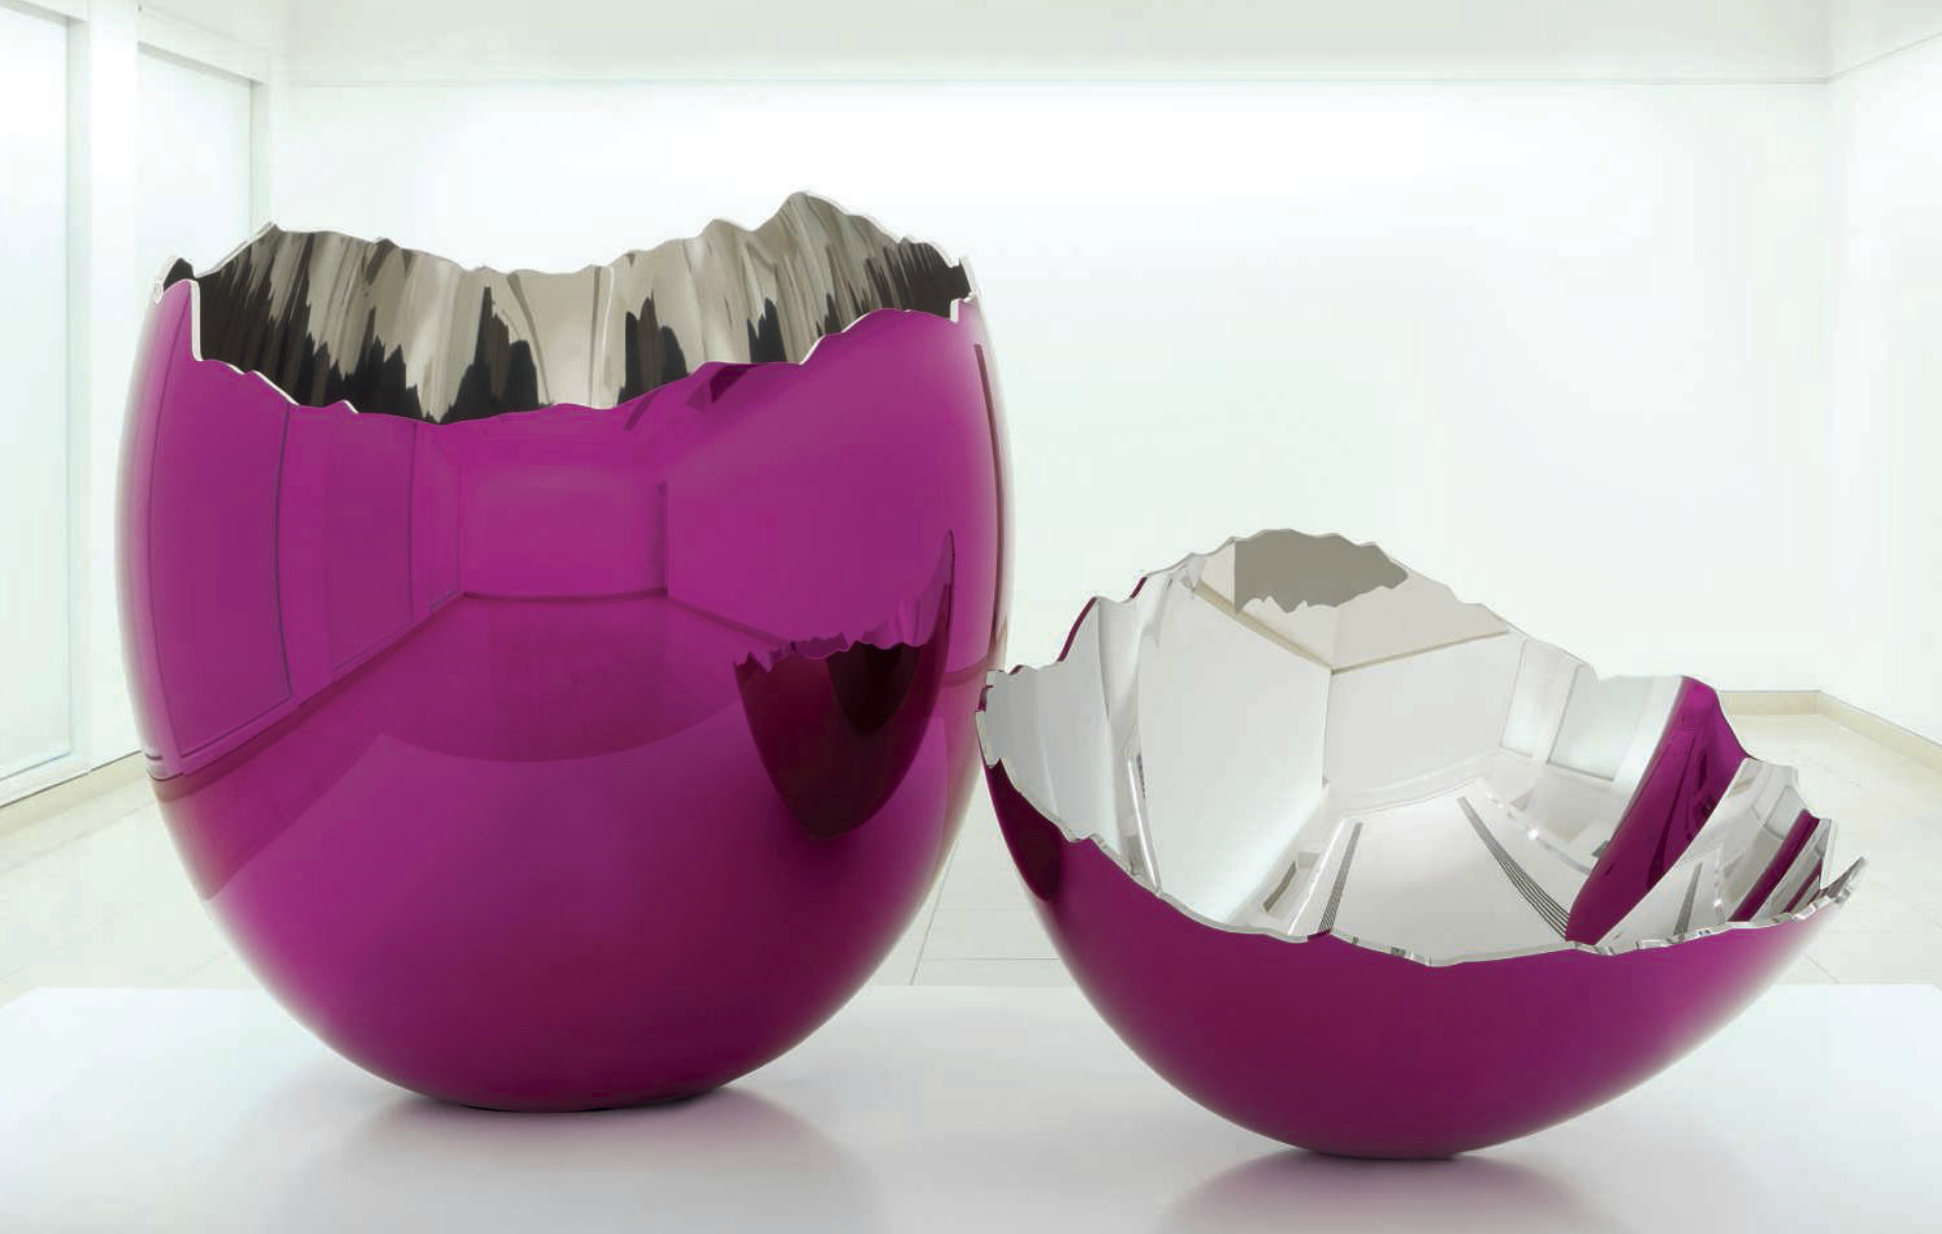 Jeff Koons Egg